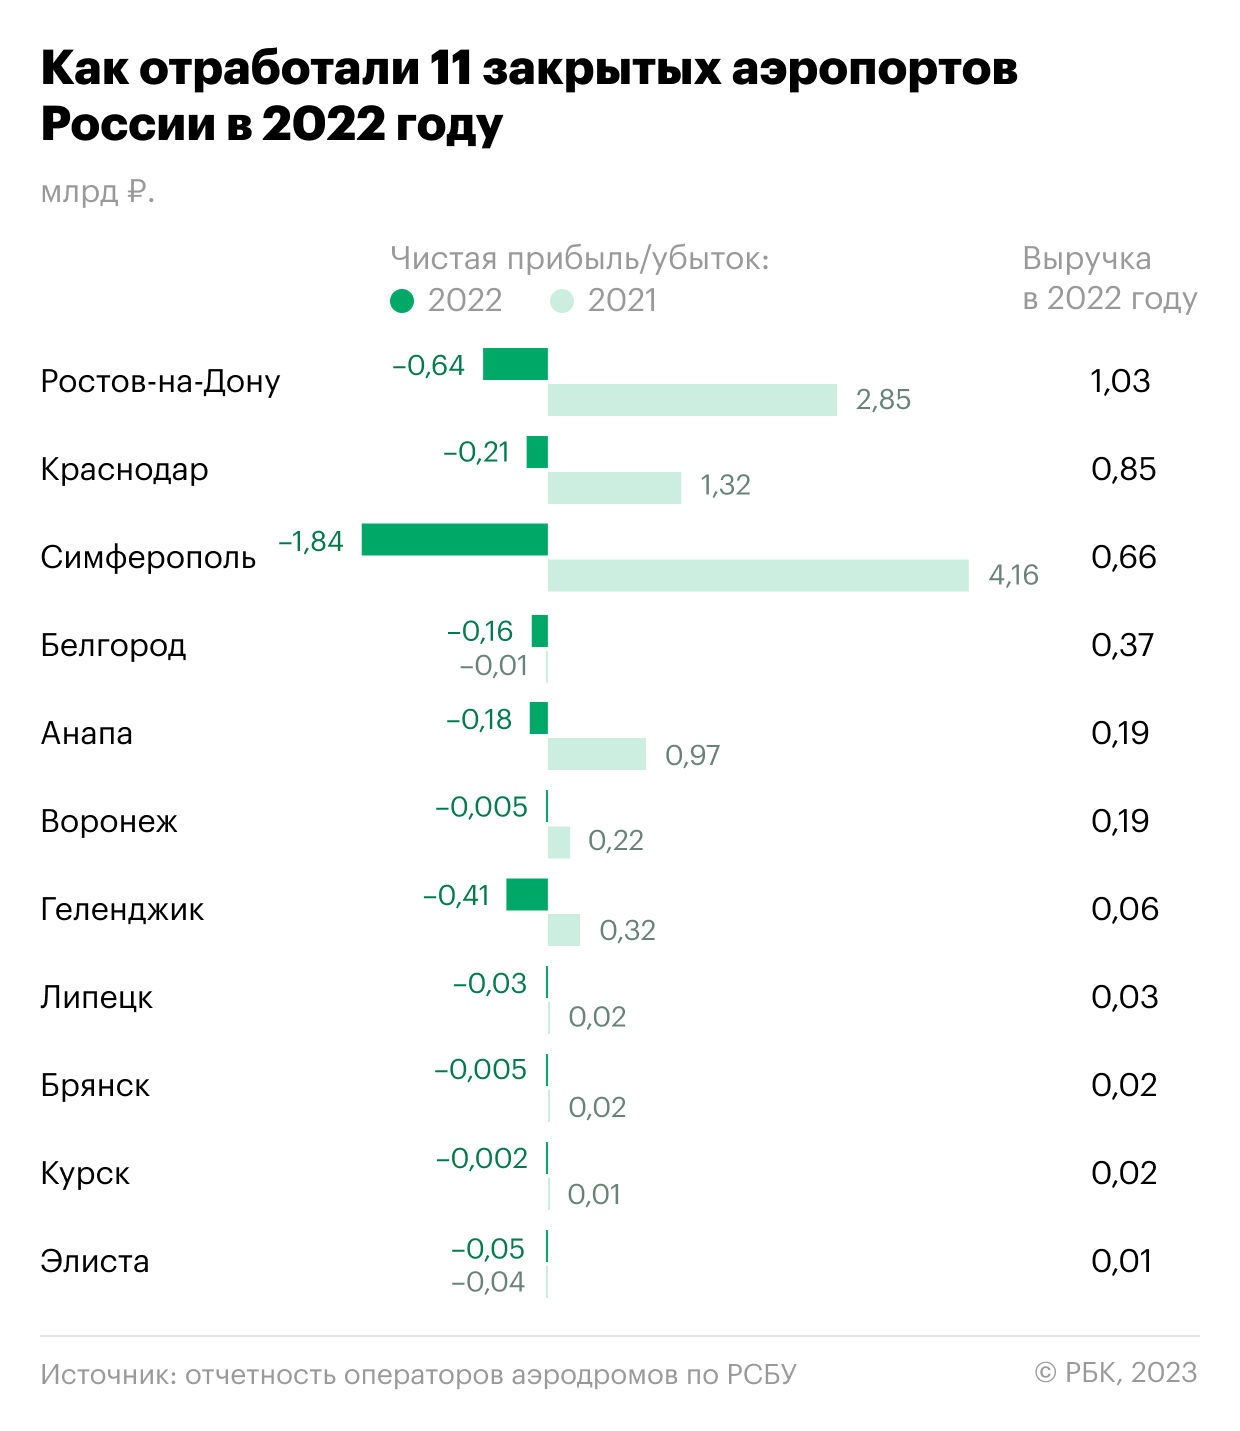 Крупнейшие аэропорты России отчитались о росте прибыли на фоне санкций